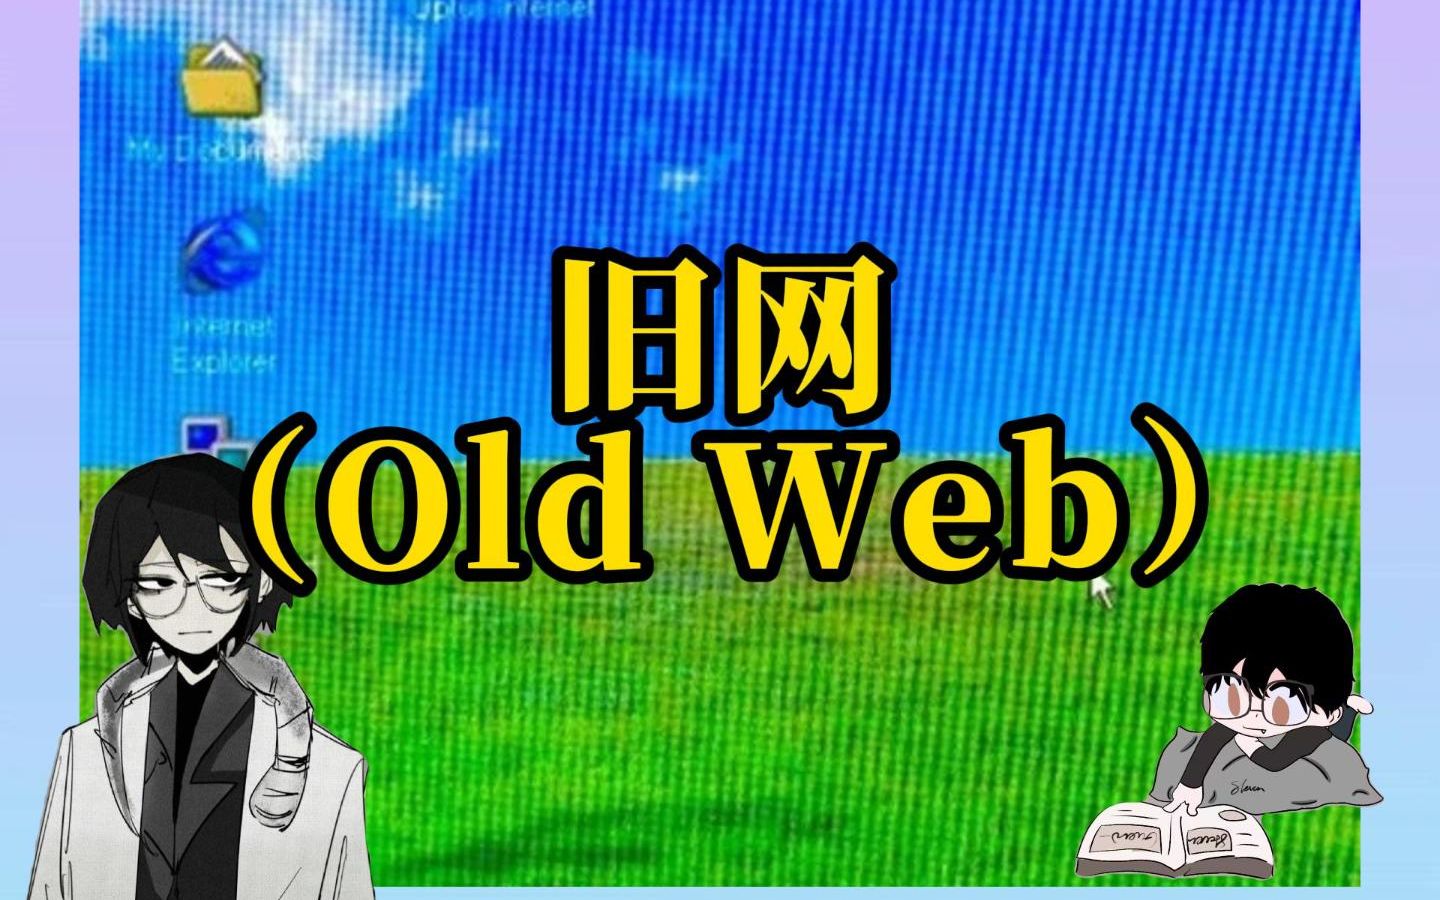 【Old Web】旧网：模糊却多彩的互联网记忆